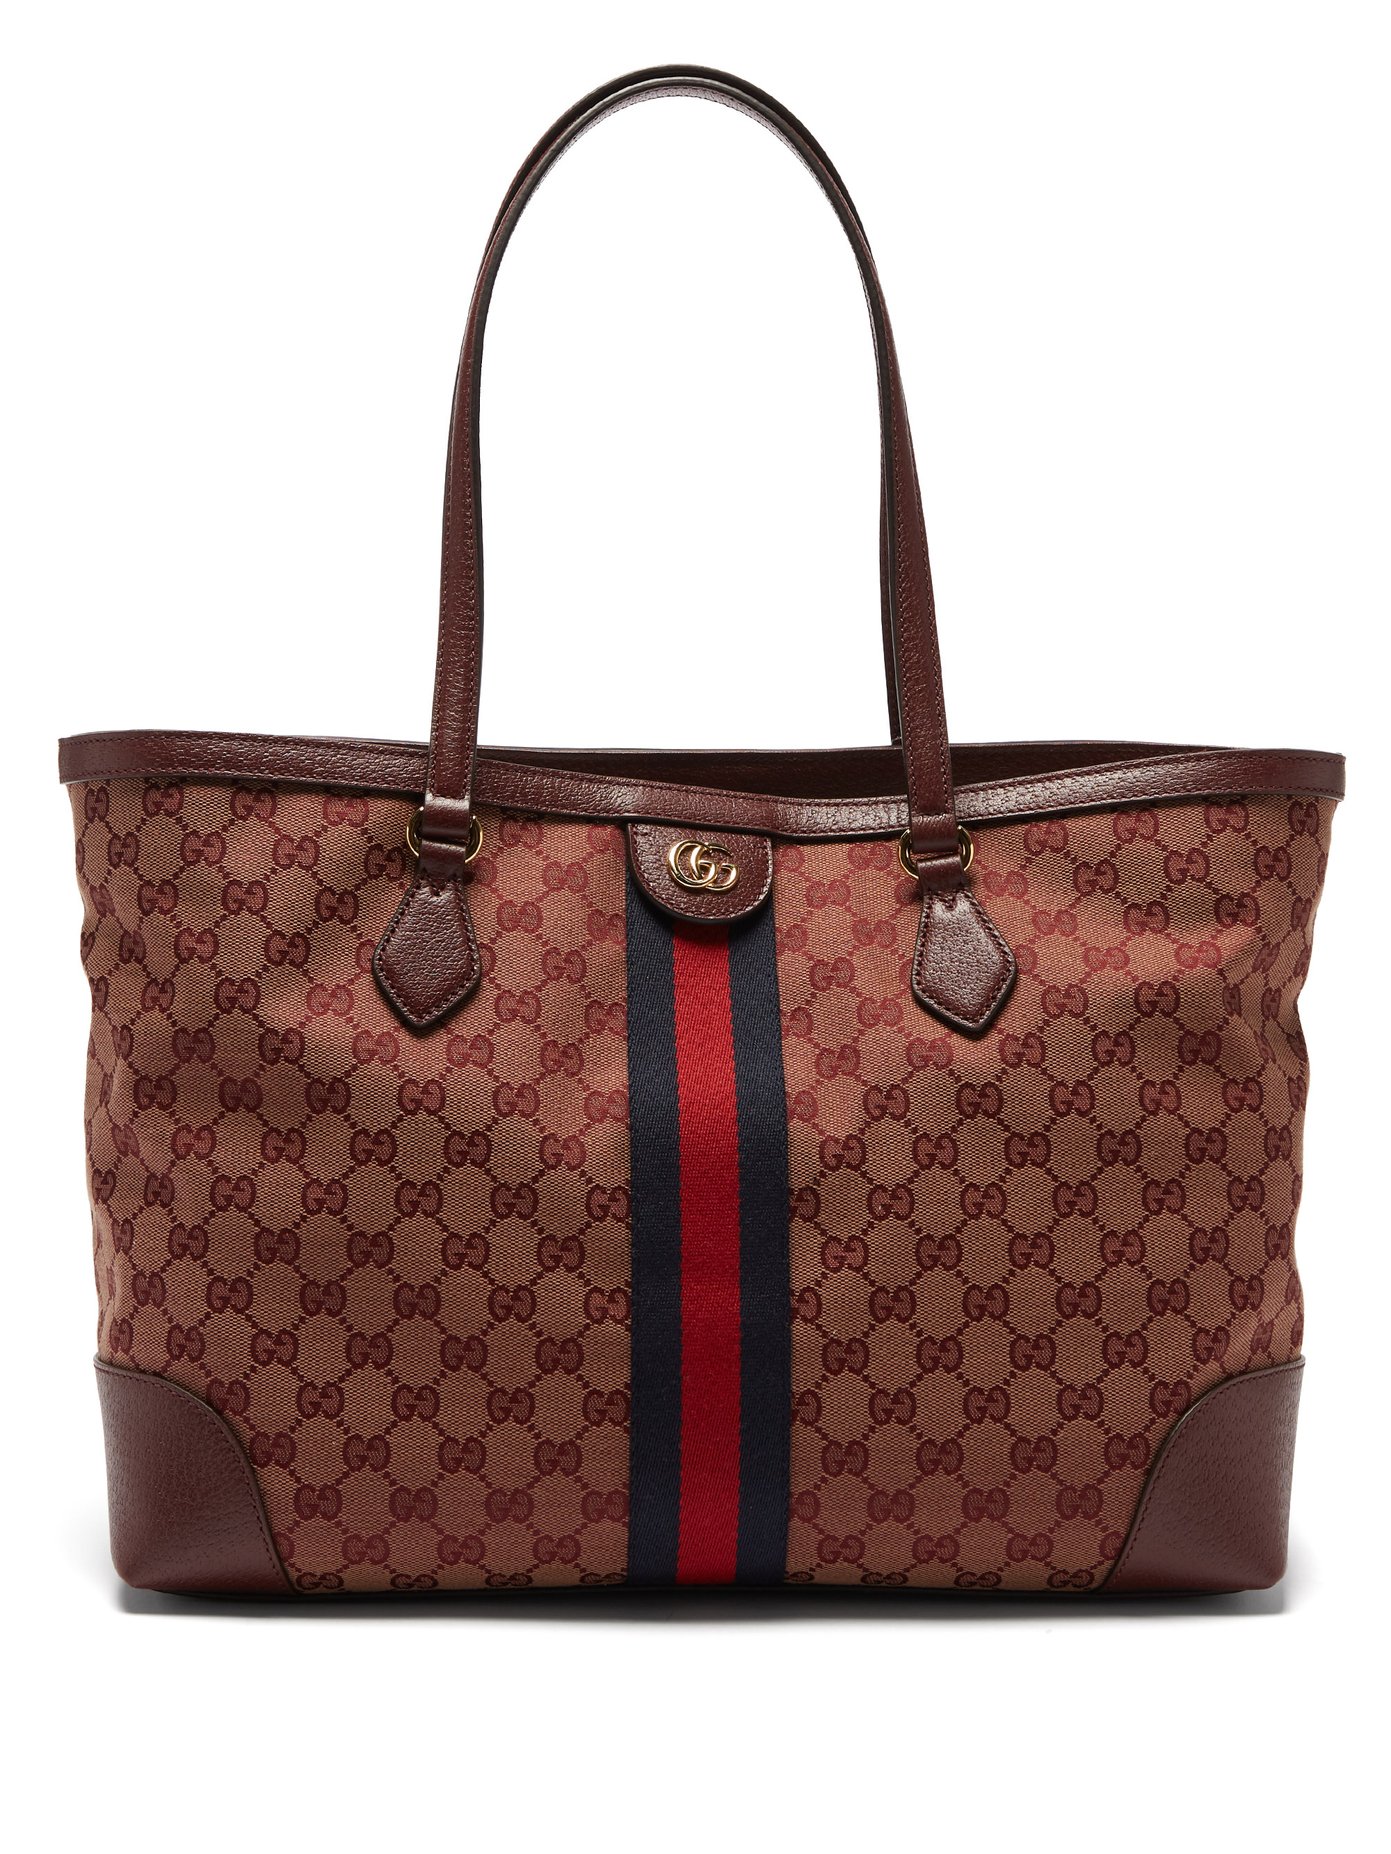 구찌 오피디아 토트백 Gucci RED MULTI Ophidia GG-jacquard canvas and leather tote bag